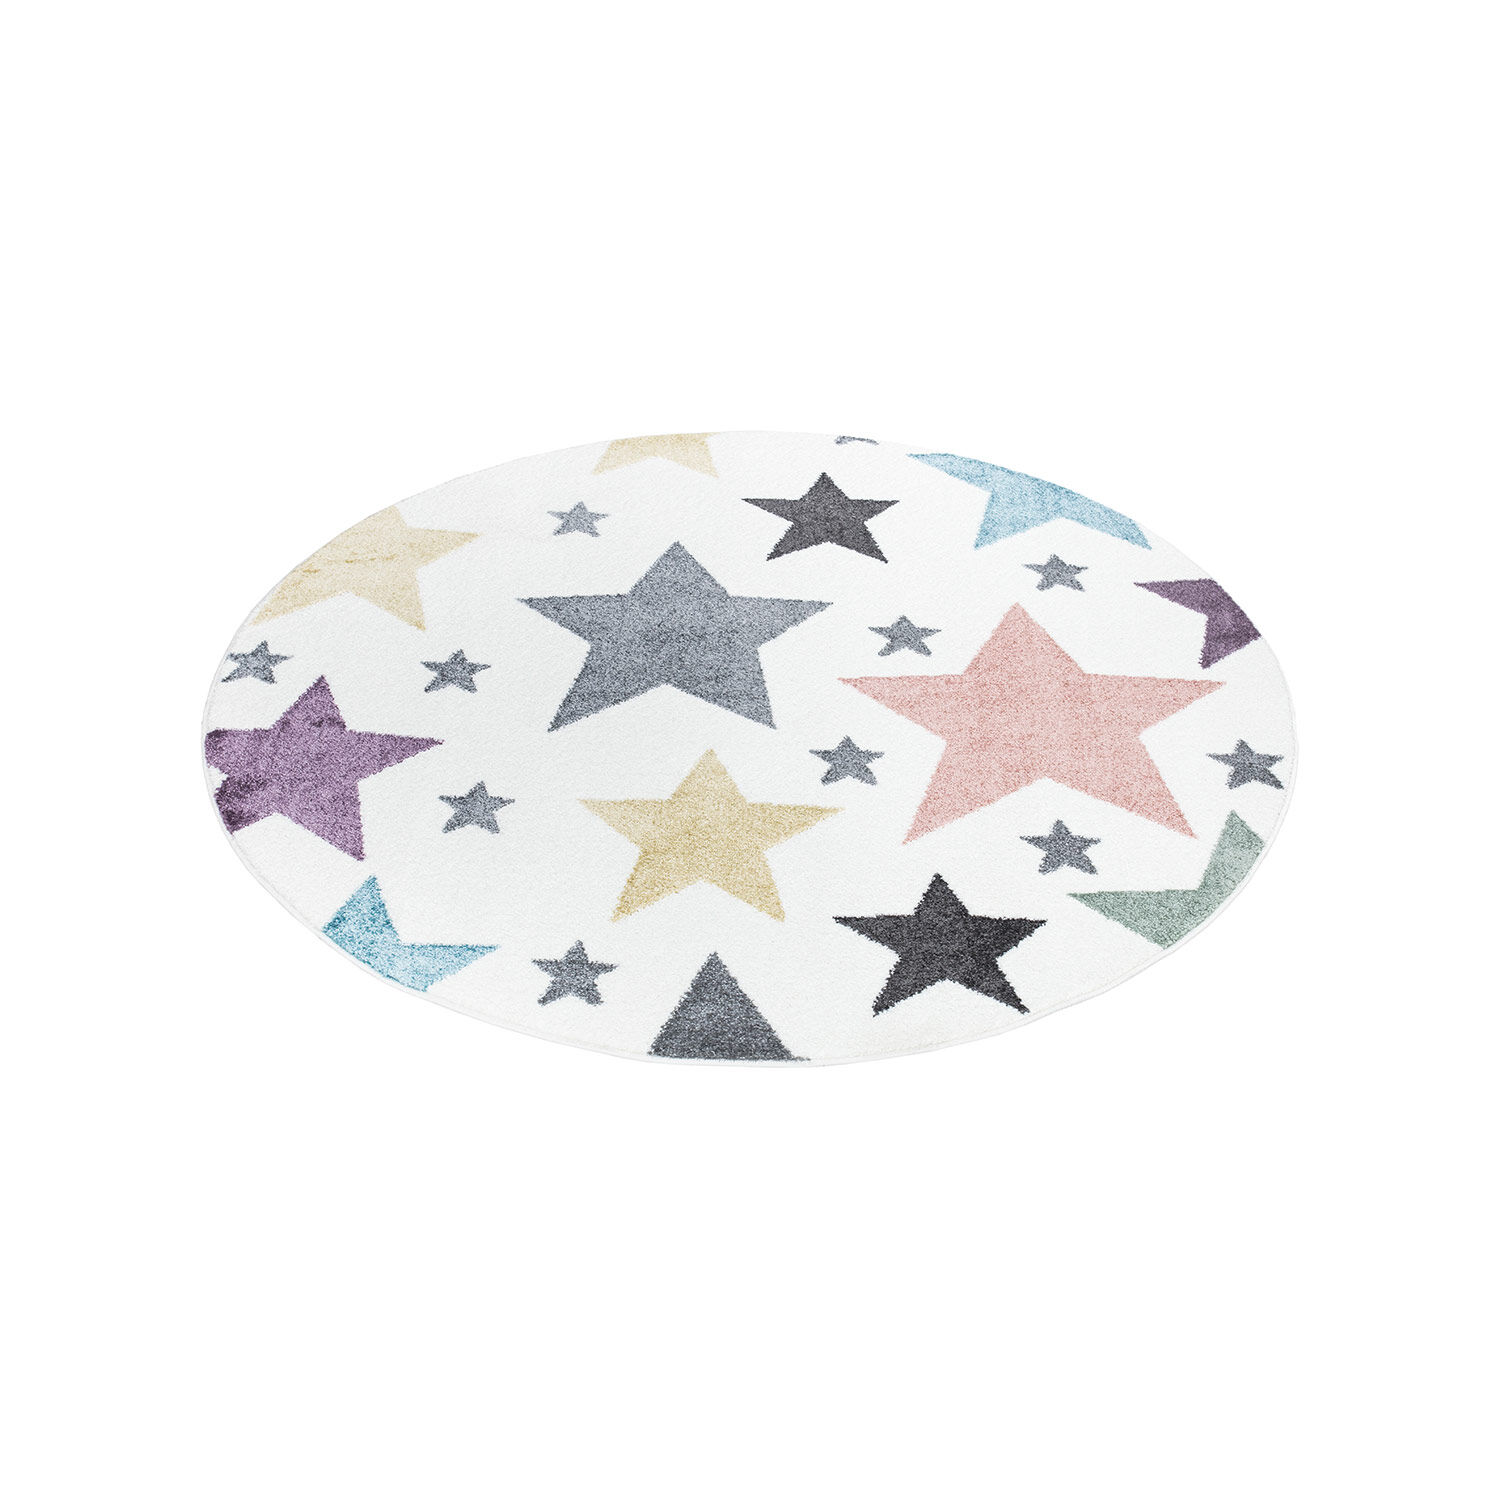 Kinderteppich Sterne Bunt 160x160 3